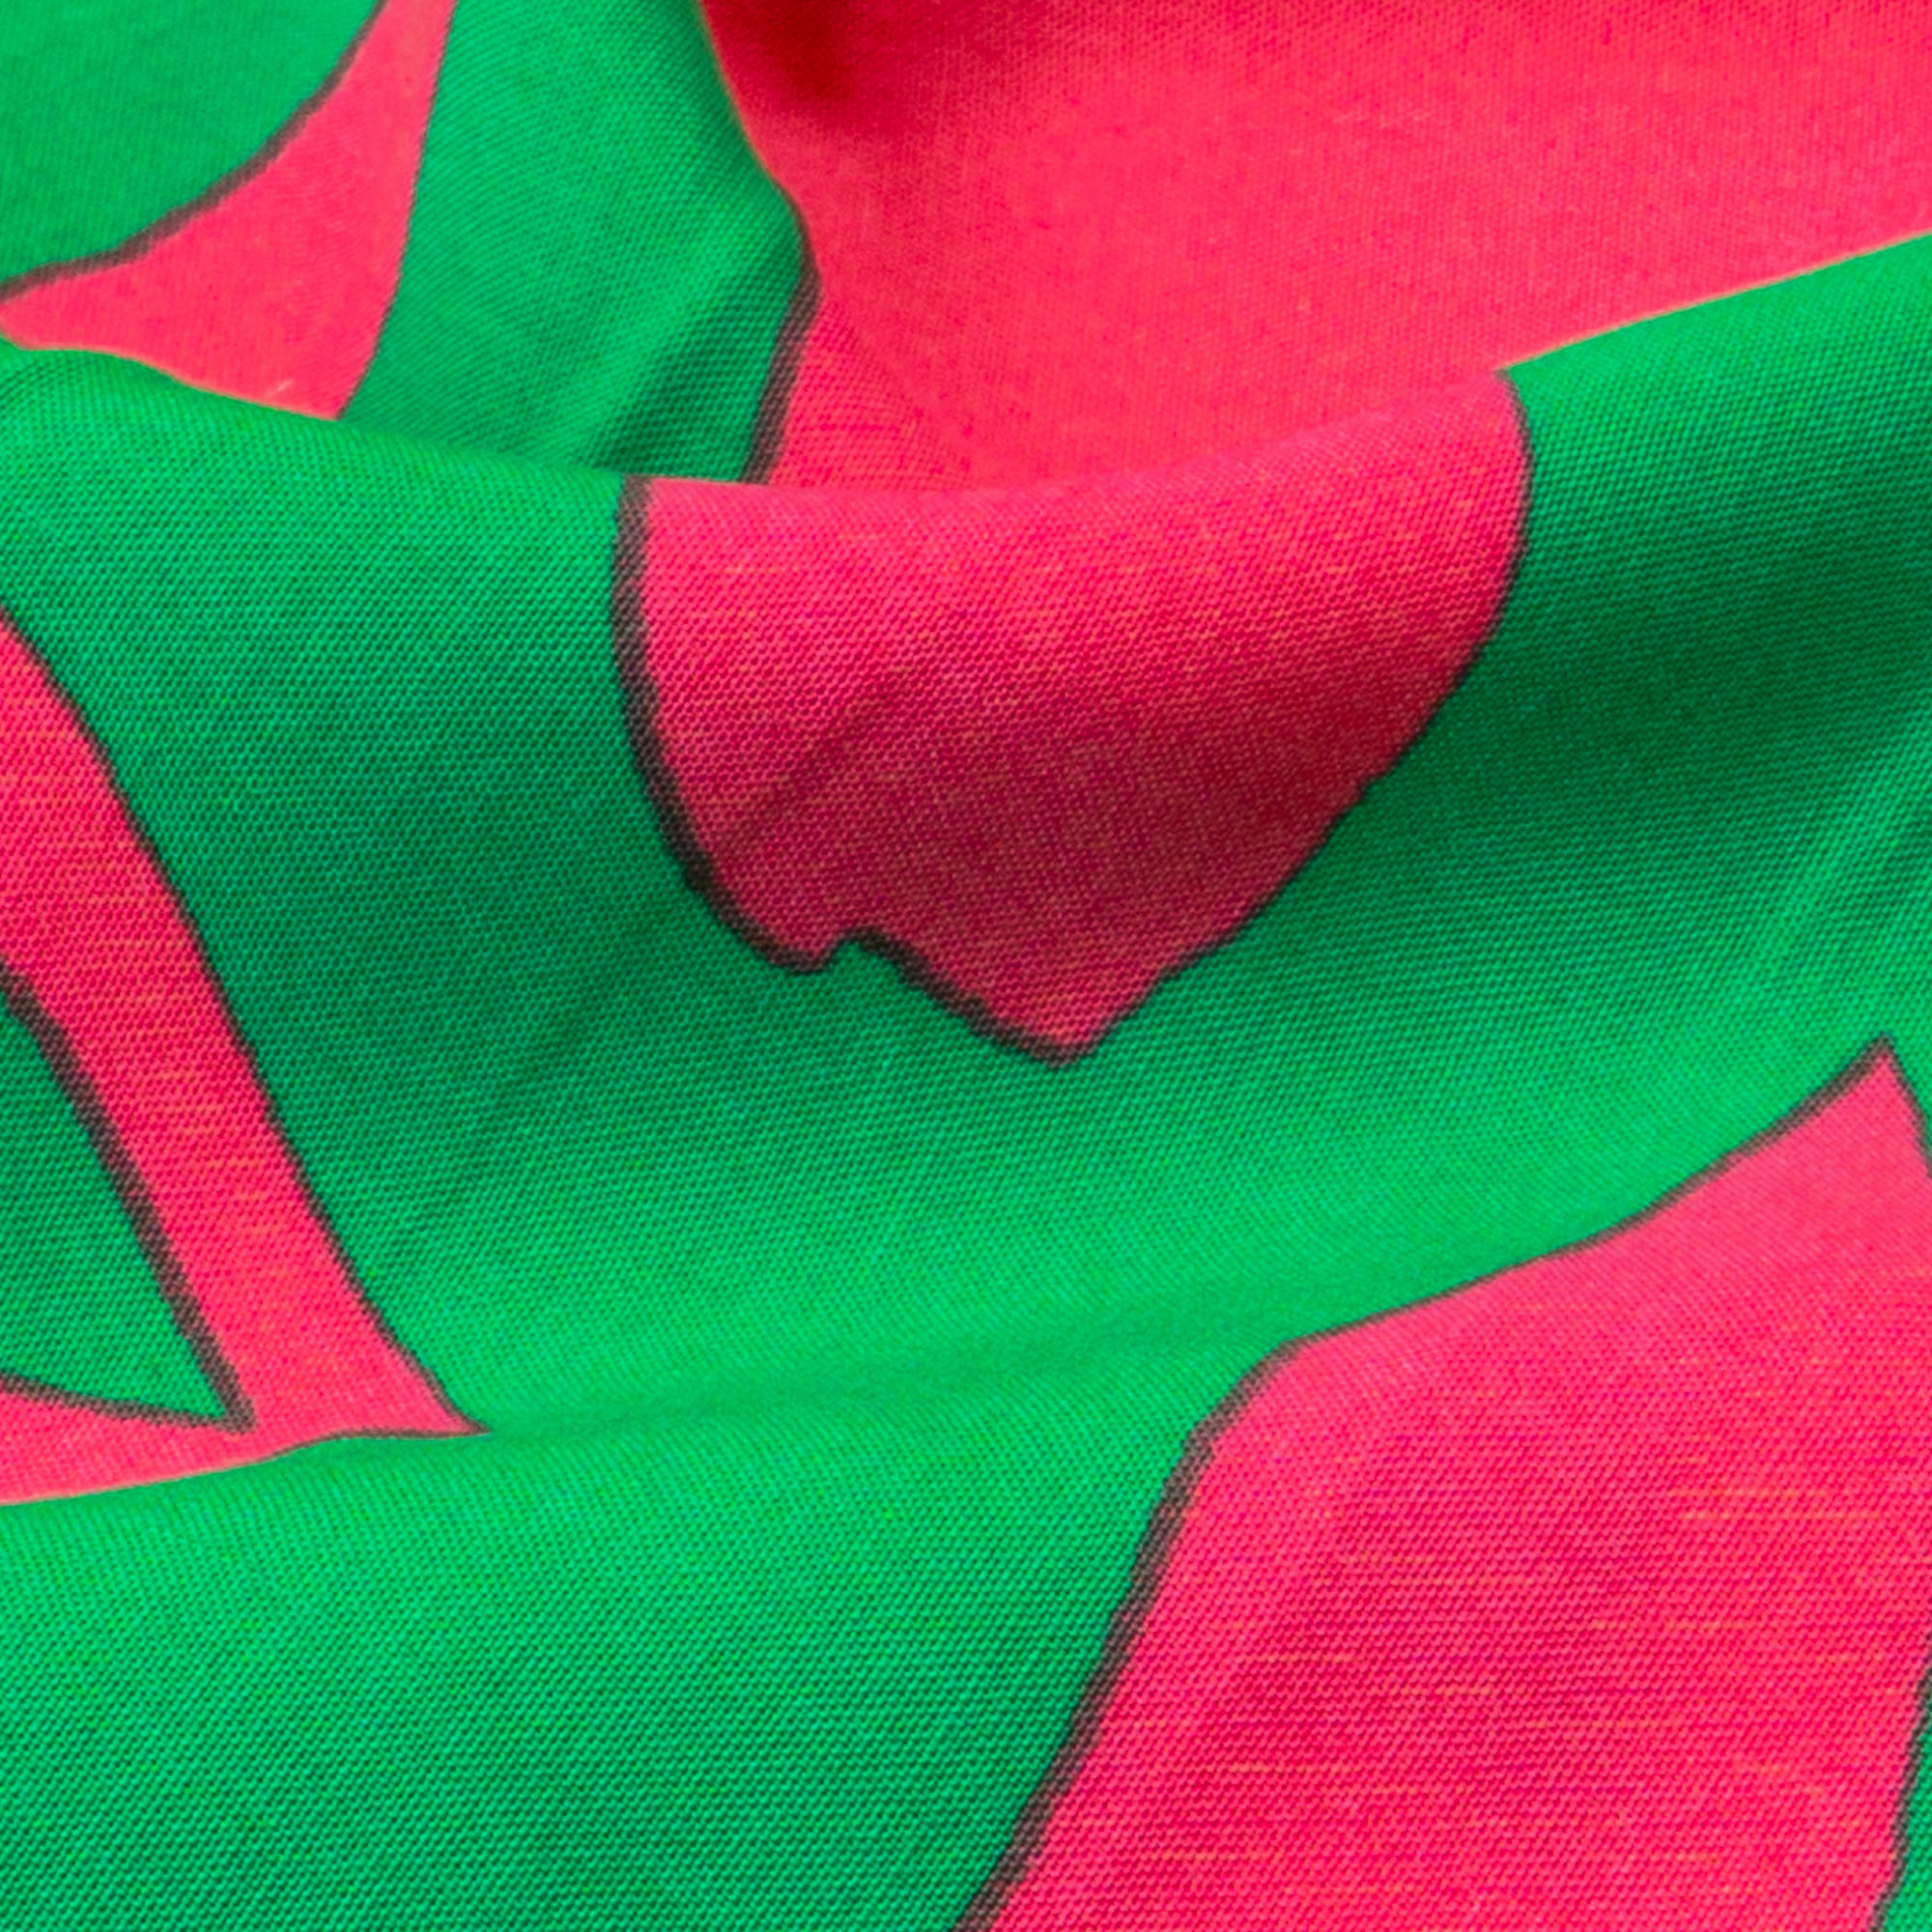 Javanaise, abstrakt gemustert, grün, pink